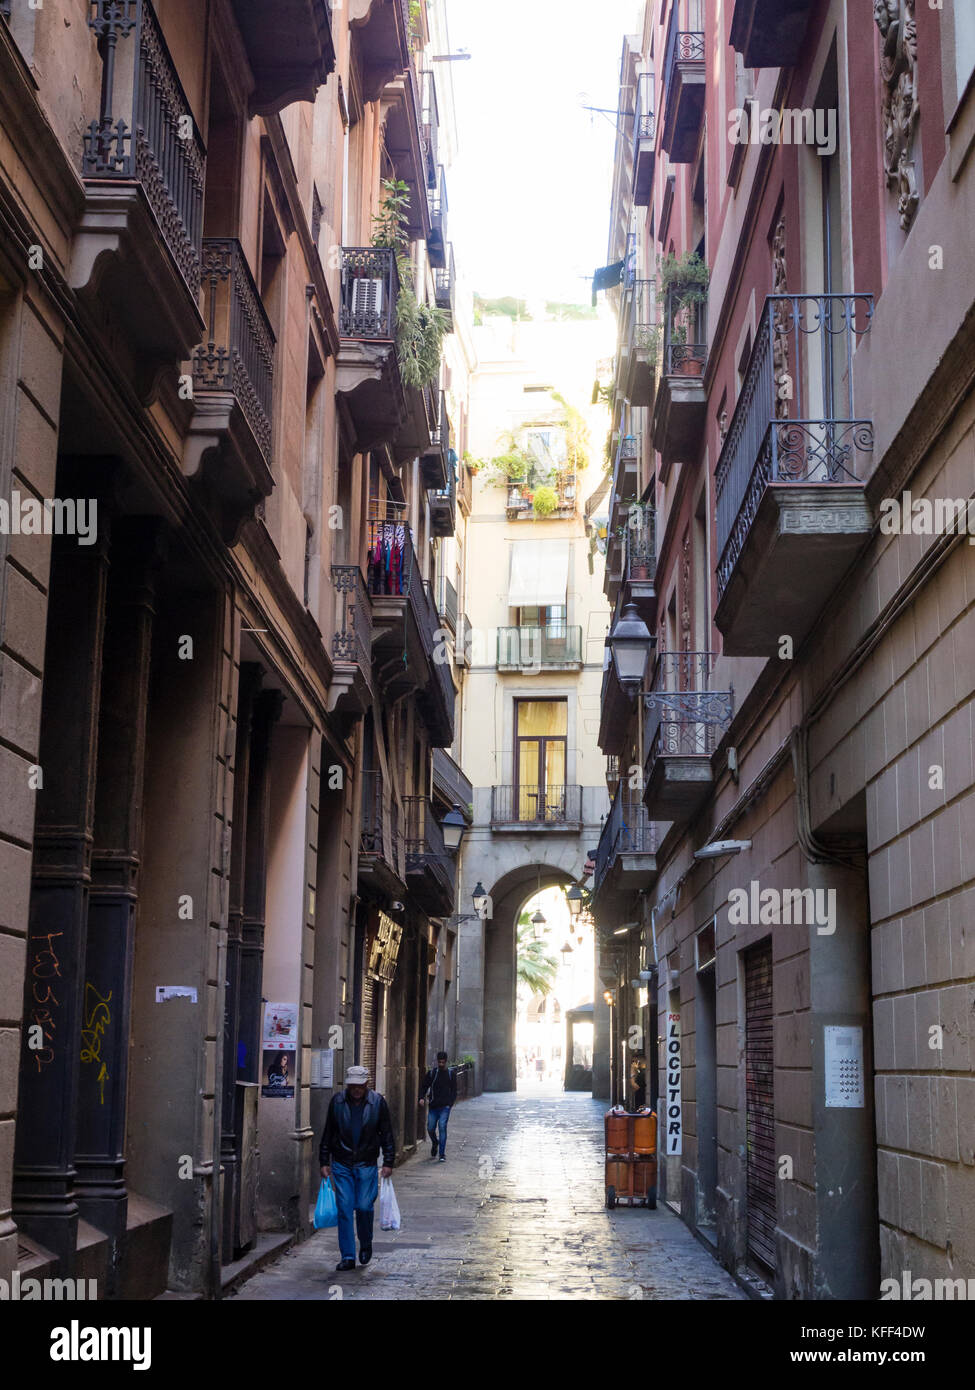 Barcelona, Spanien - 11.11.2016: Menschen sind zu Fuß eine enge Gasse in der Altstadt von Barcelona Bari Gotic Viertel. Stockfoto